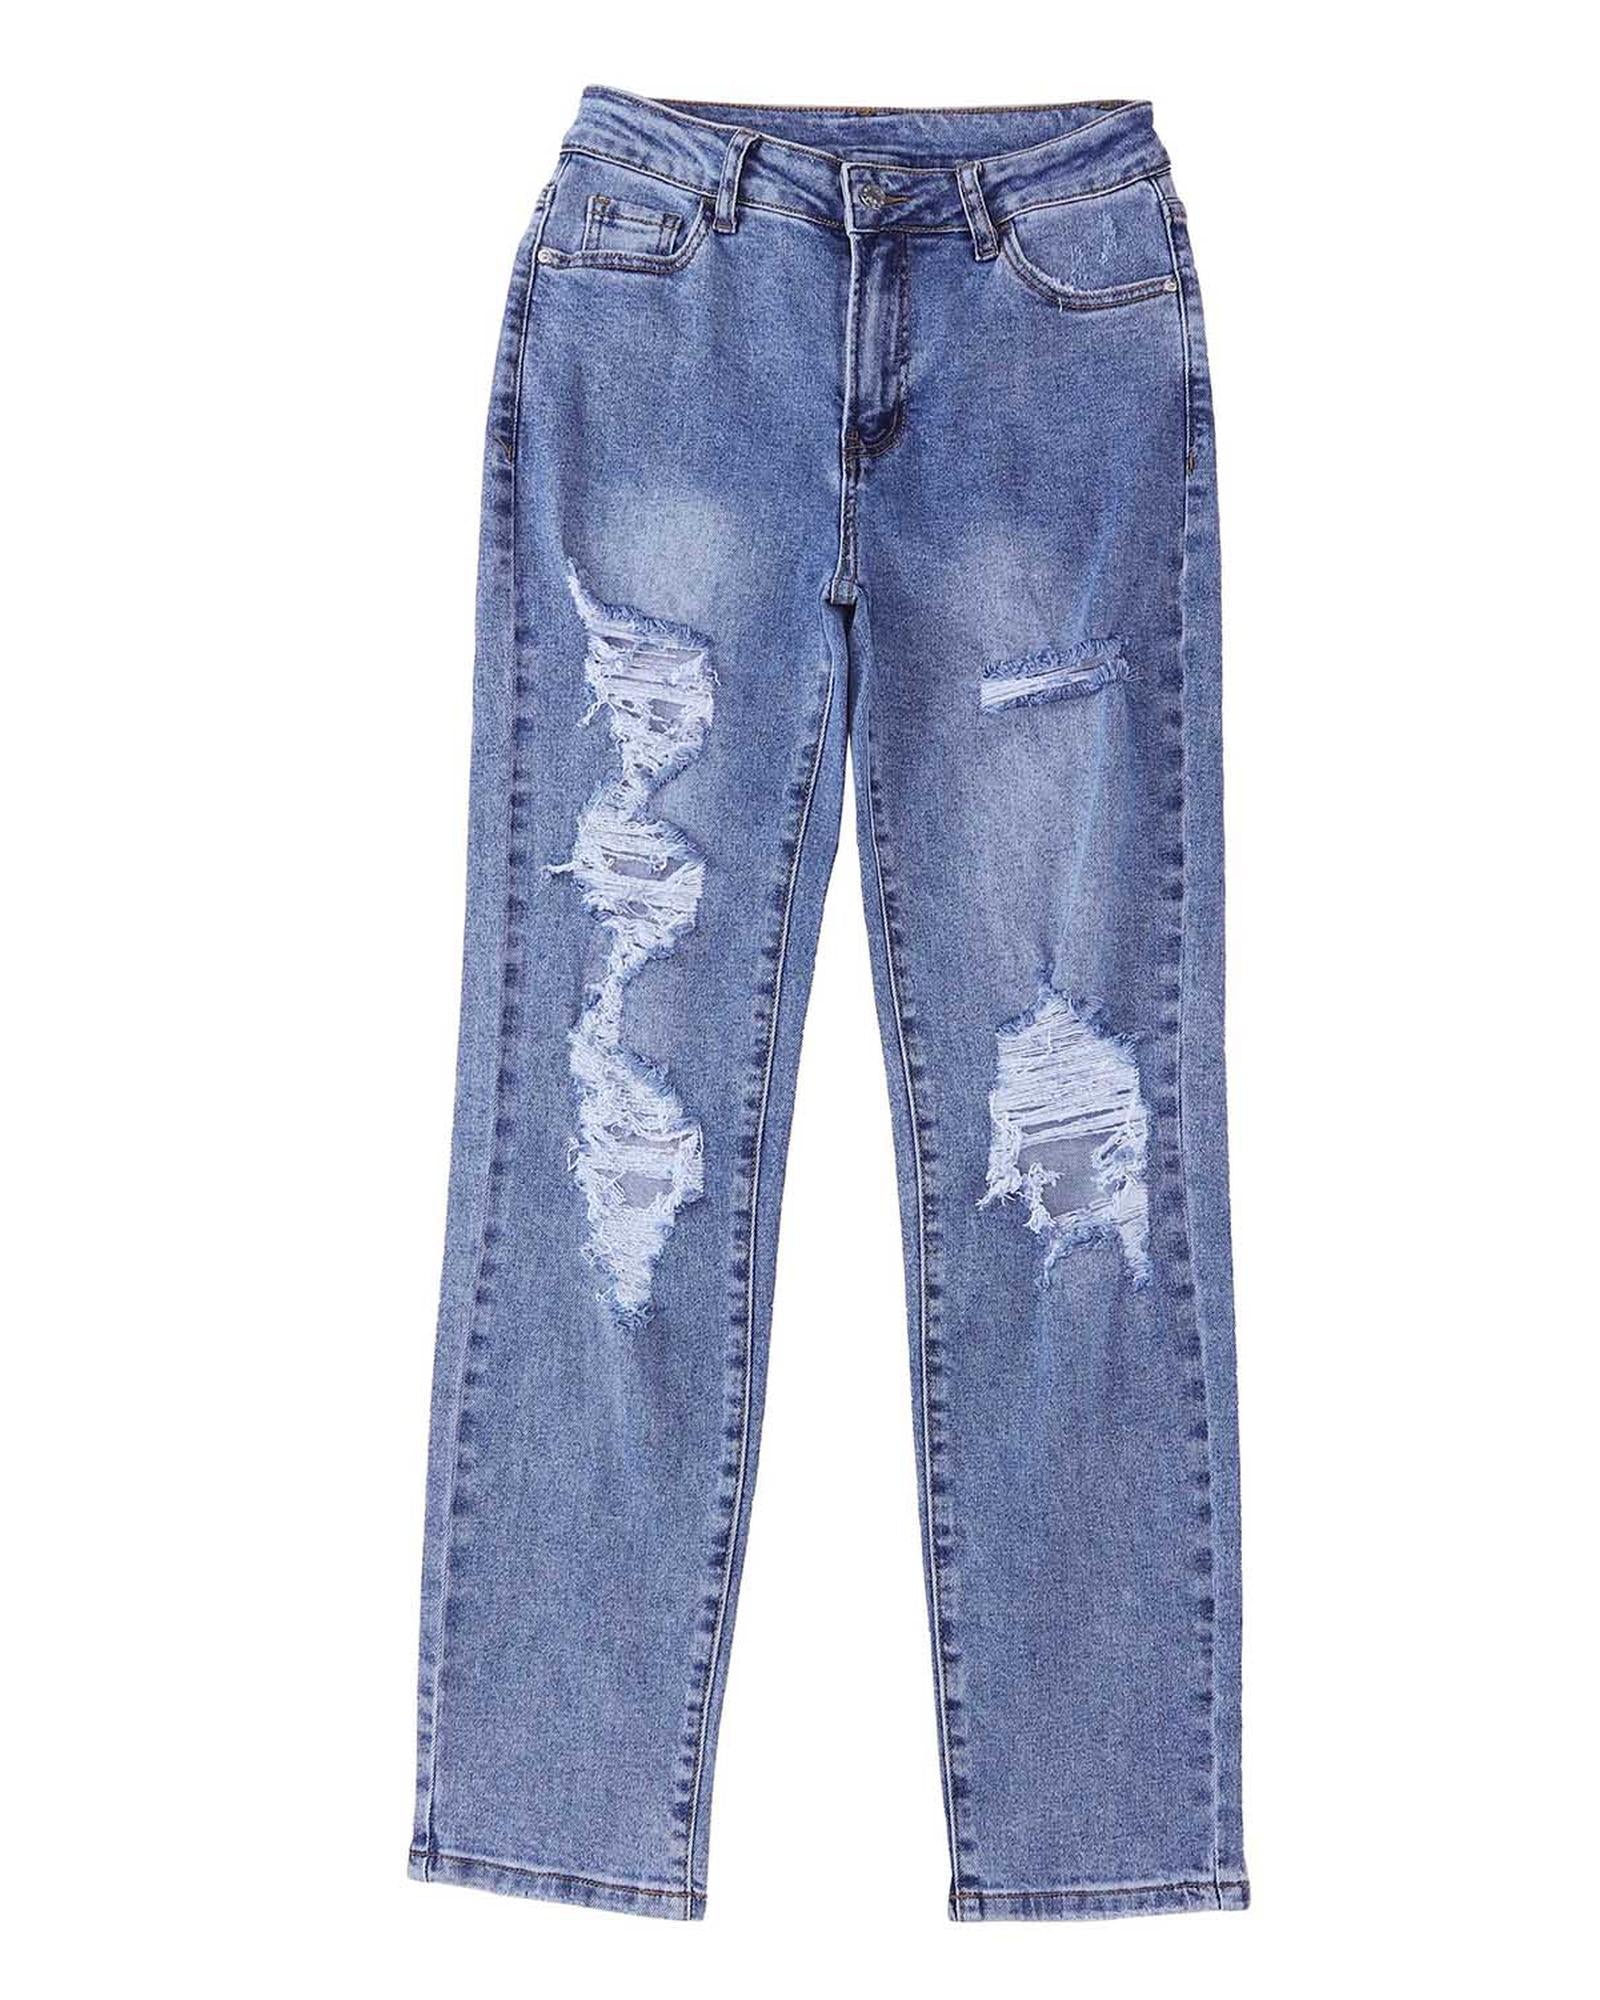 Destroyed Boyfriend Jeans - 12 US